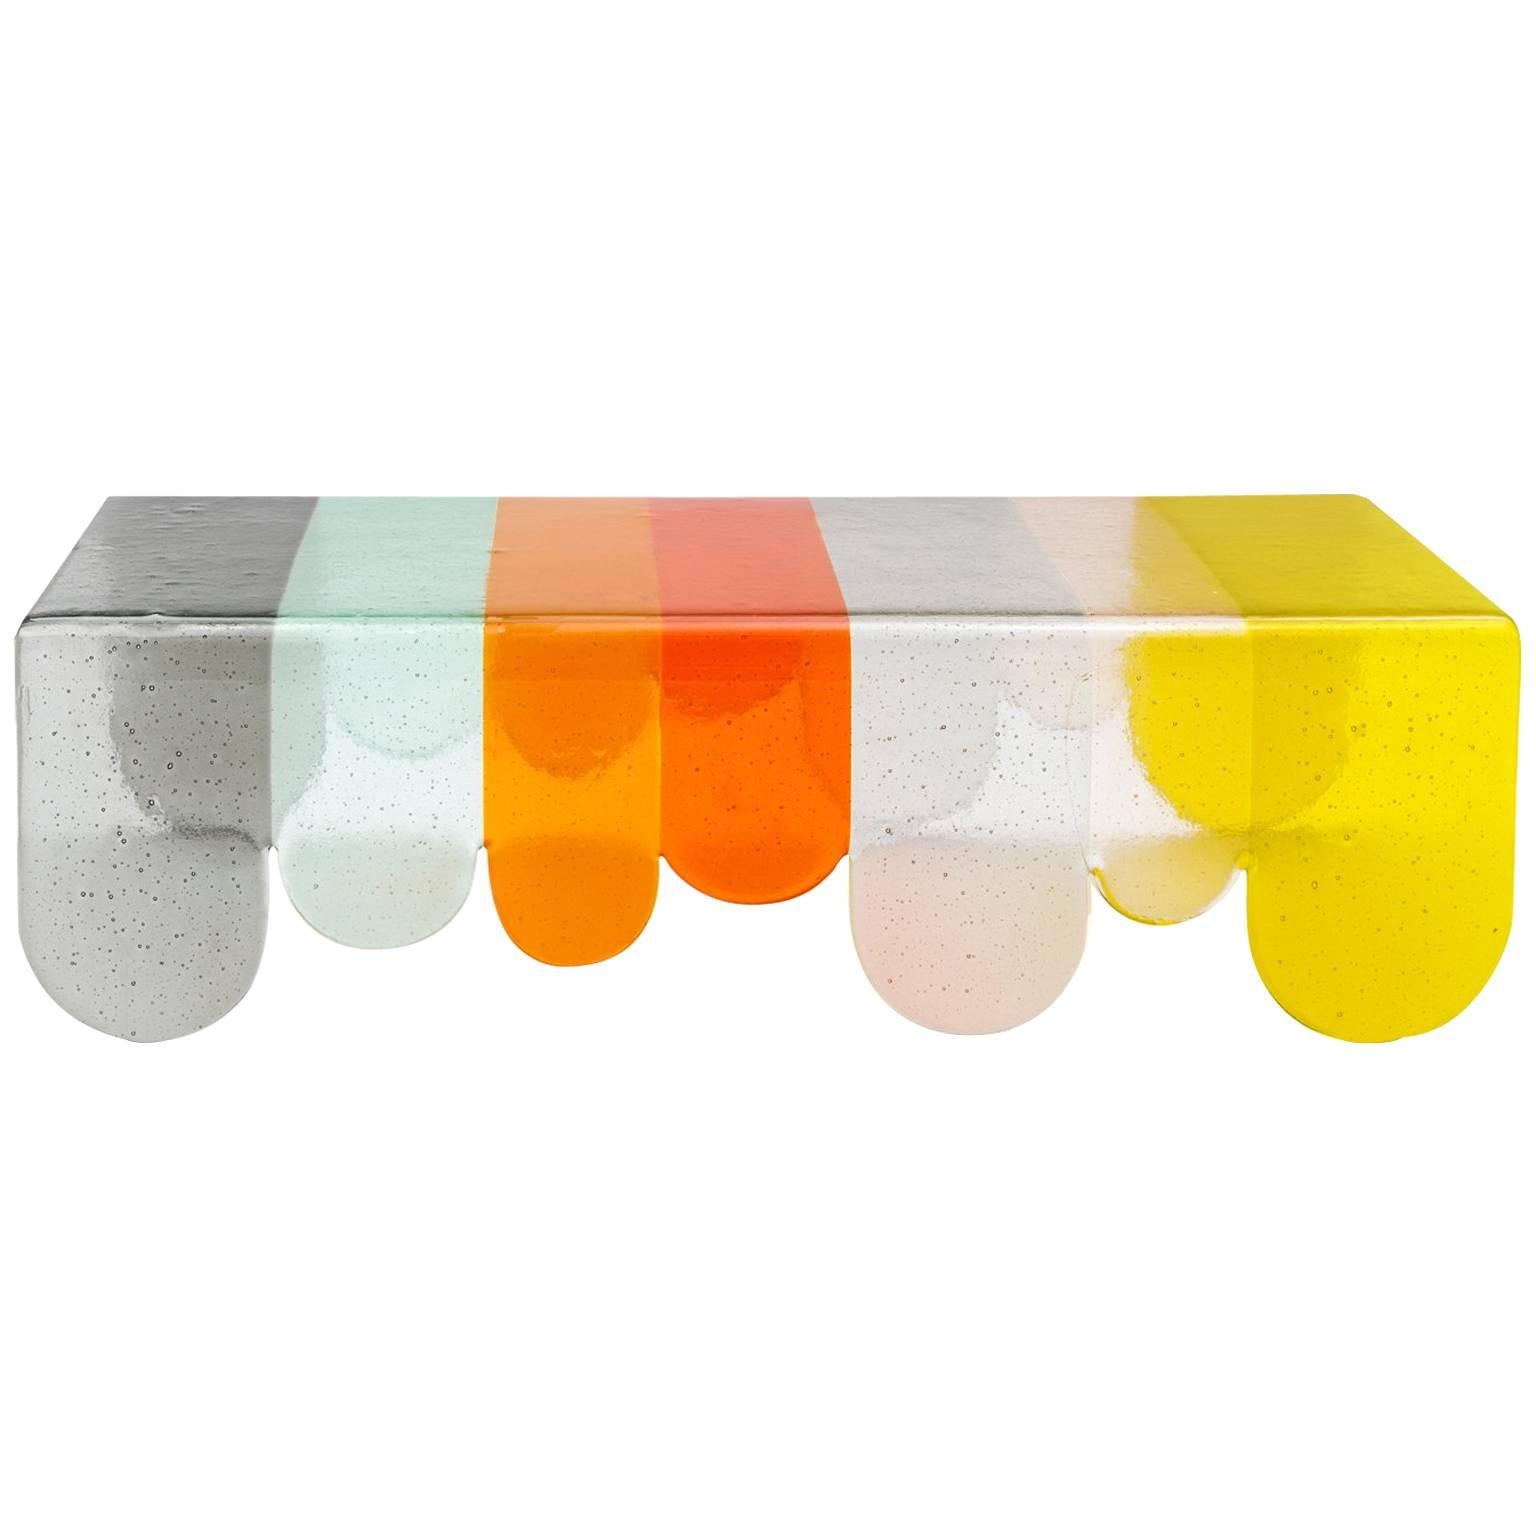 Lunapark Colored Murano Glass Coffee Table